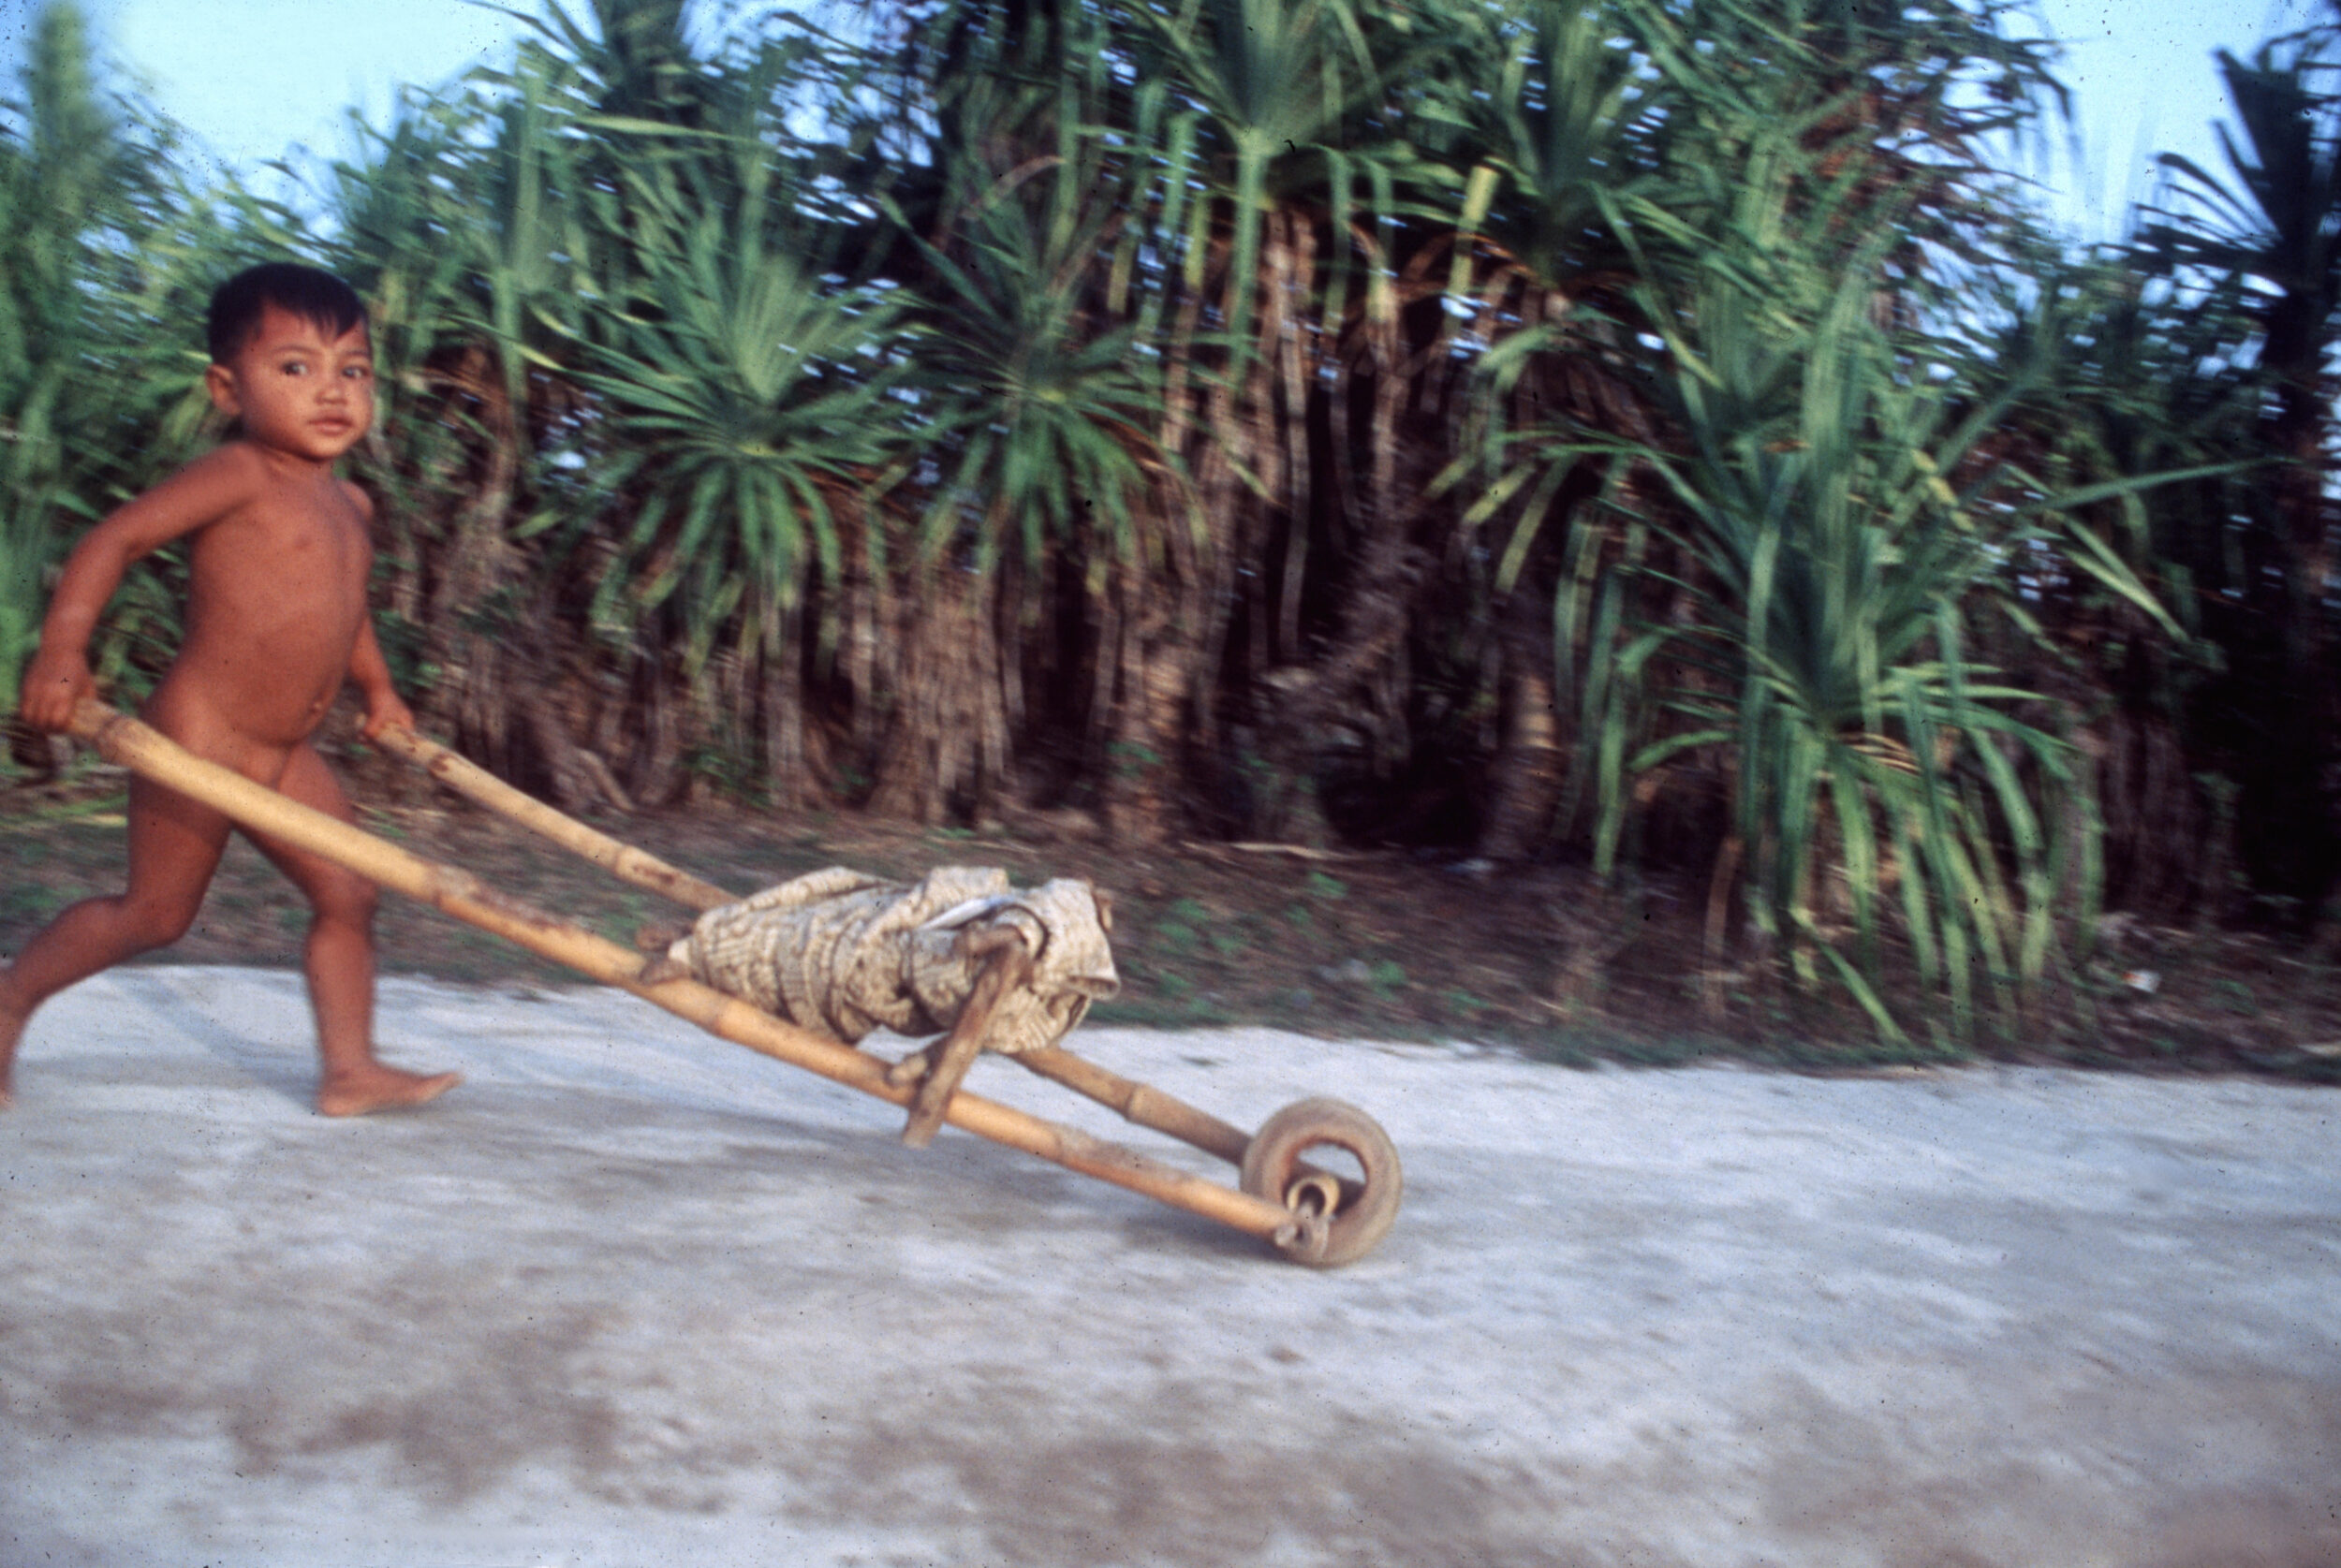 Kind mit Schubkarre aus Bambus, Insel Lombok, Indonesien